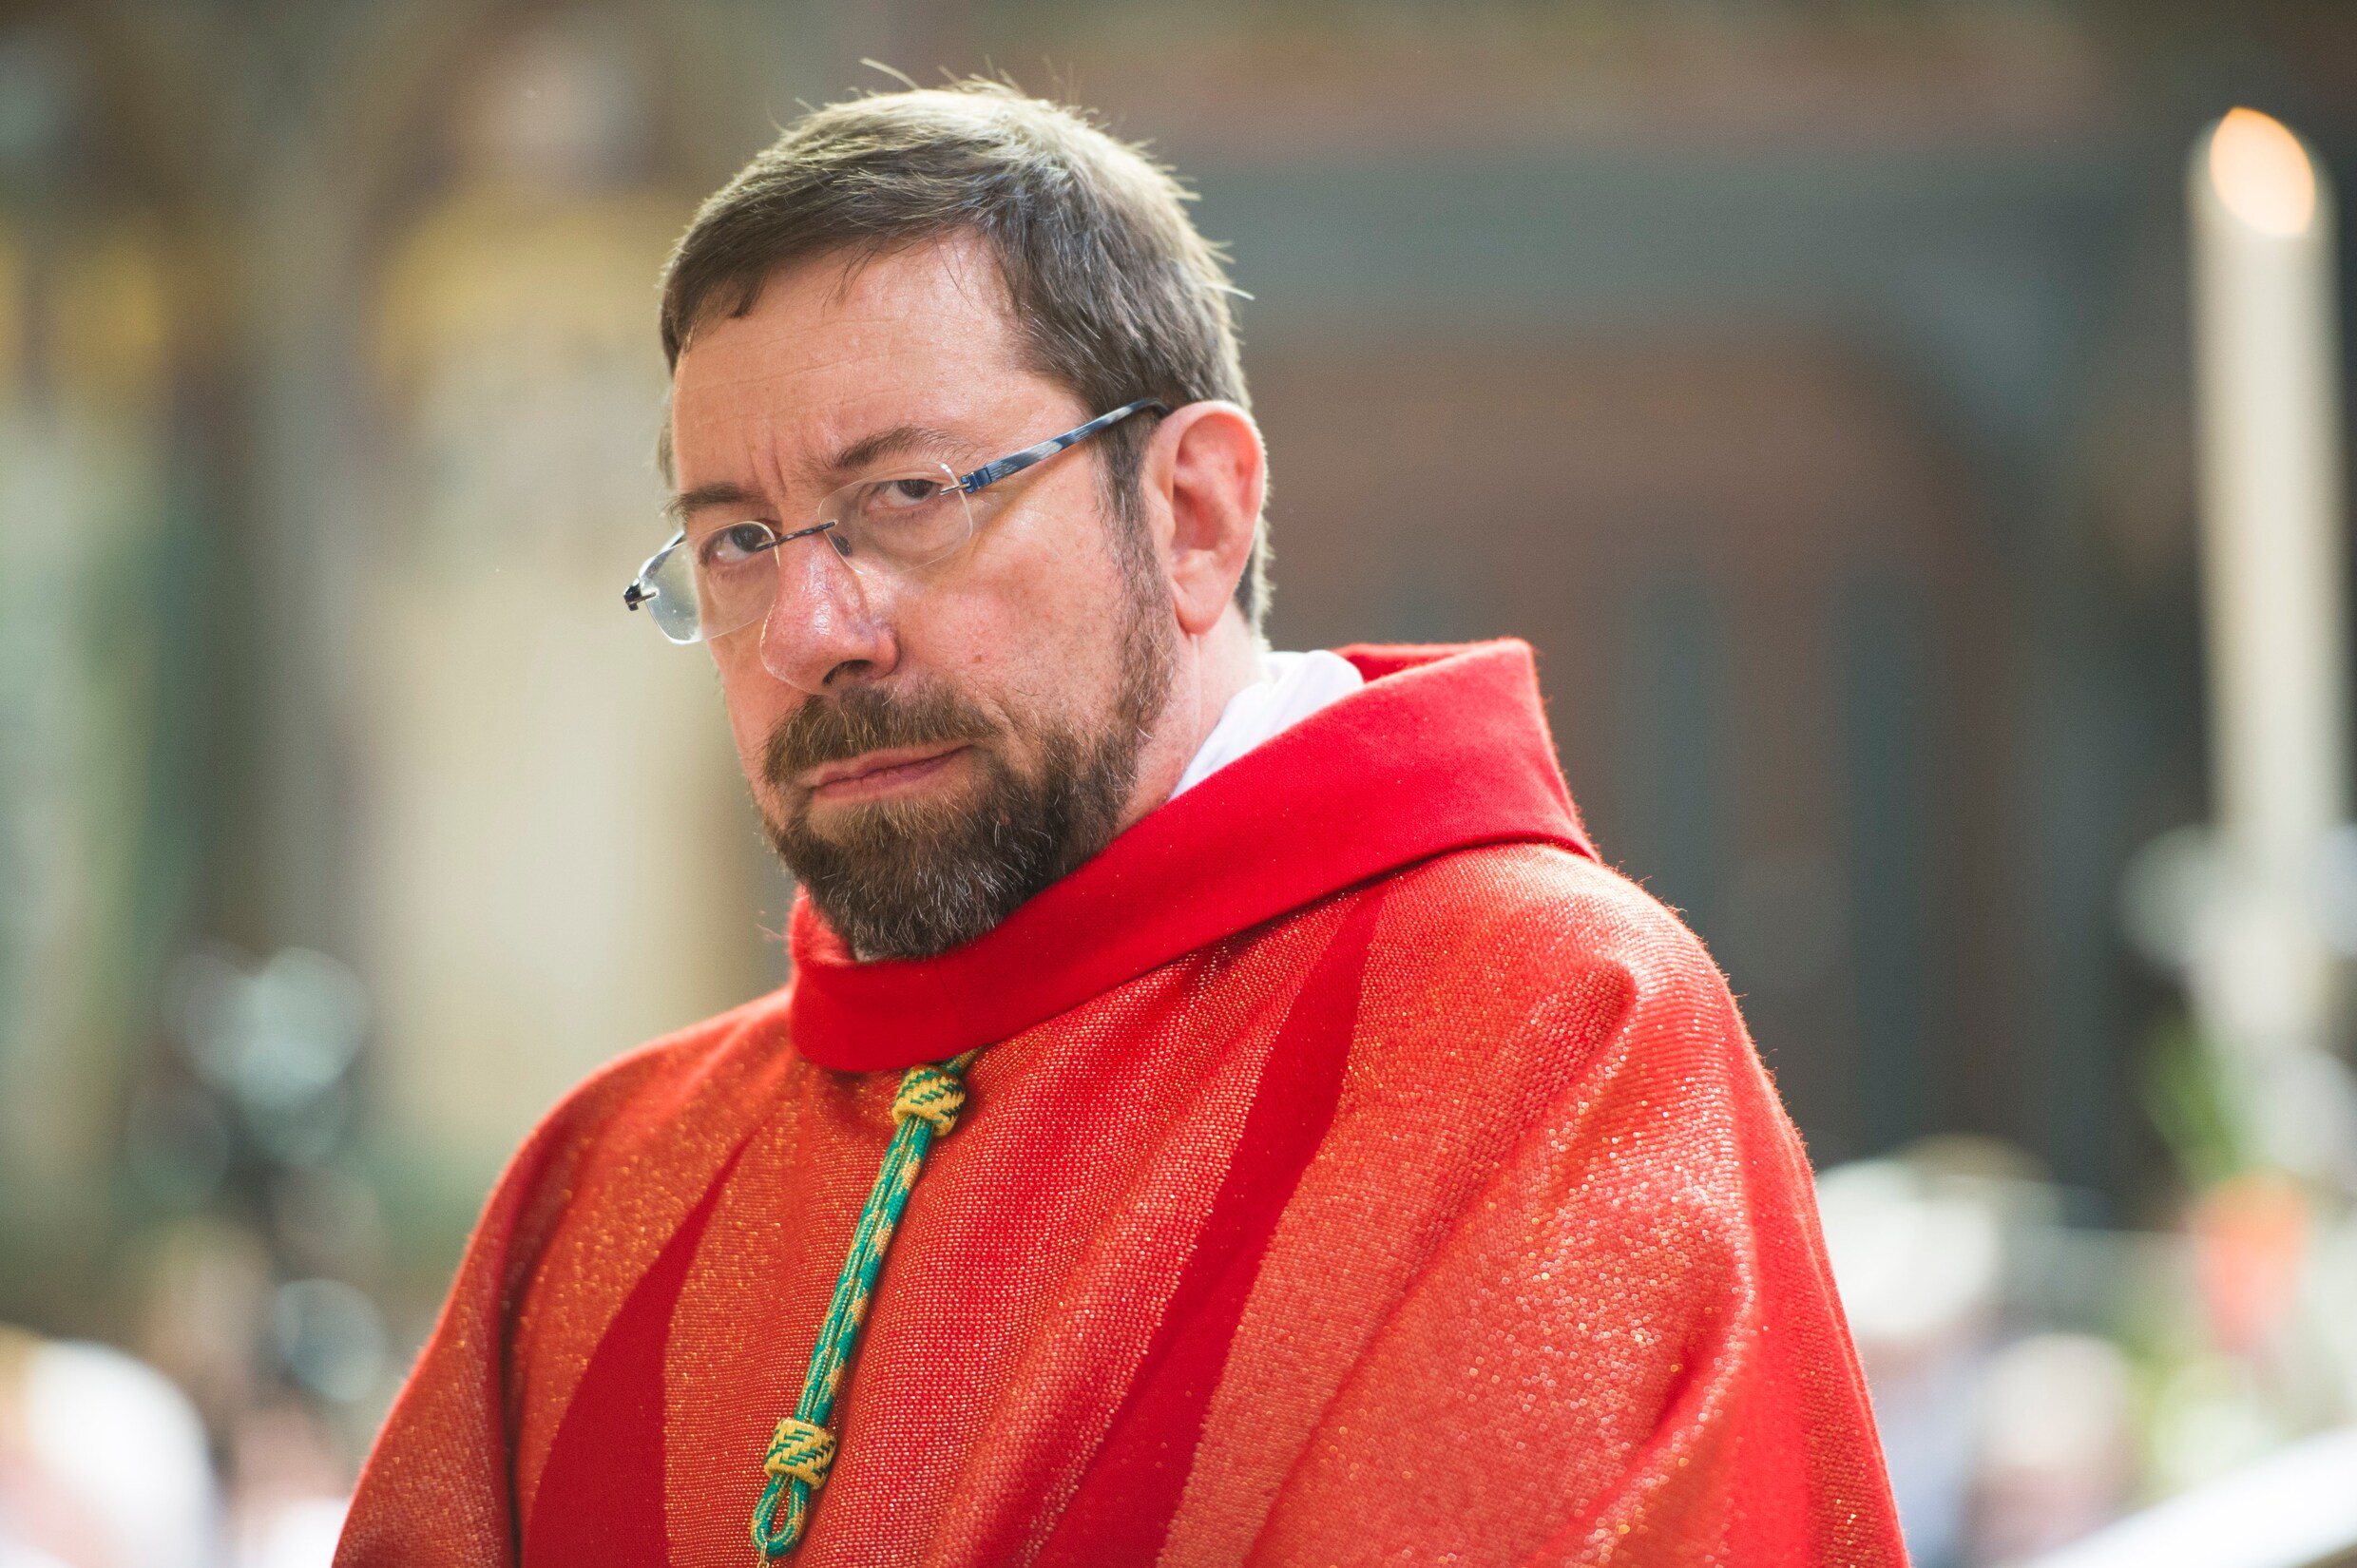 Bisschop van Luik opgesloten in badkamer tijdens overval: dieven stelen 20.000 euro, kelken en kunstwerken